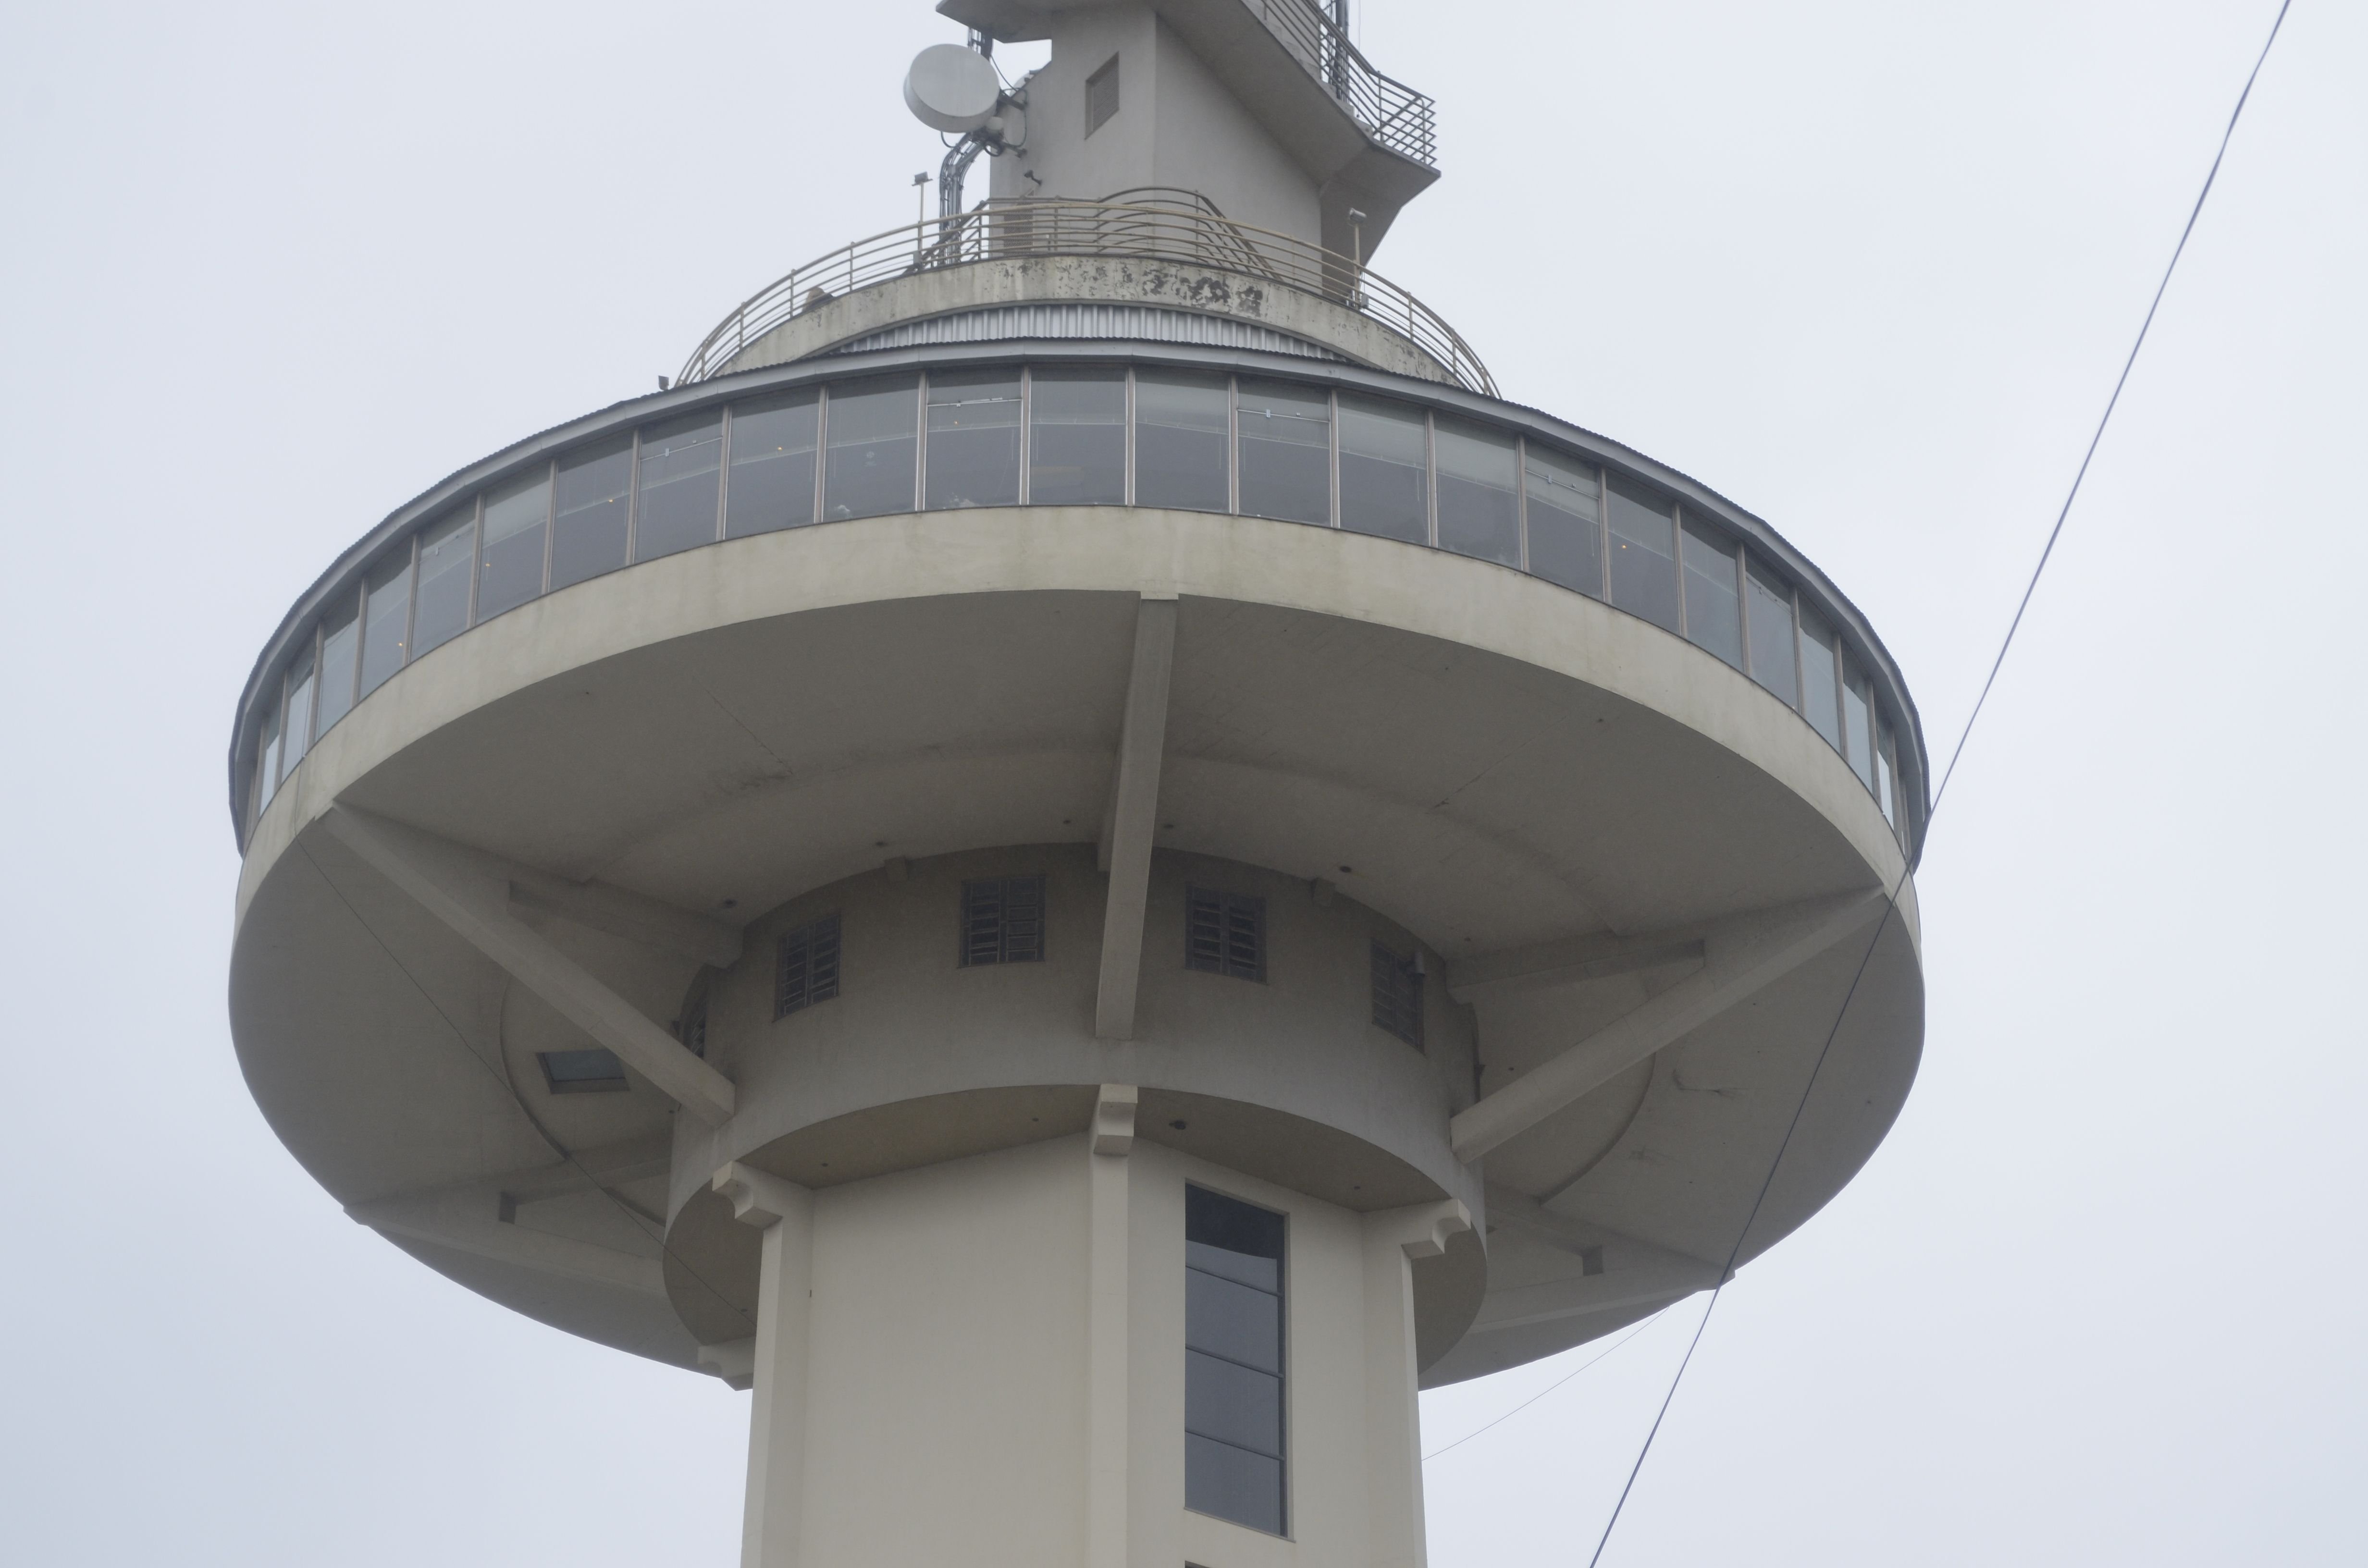 Torre giratória será nova atração em BC